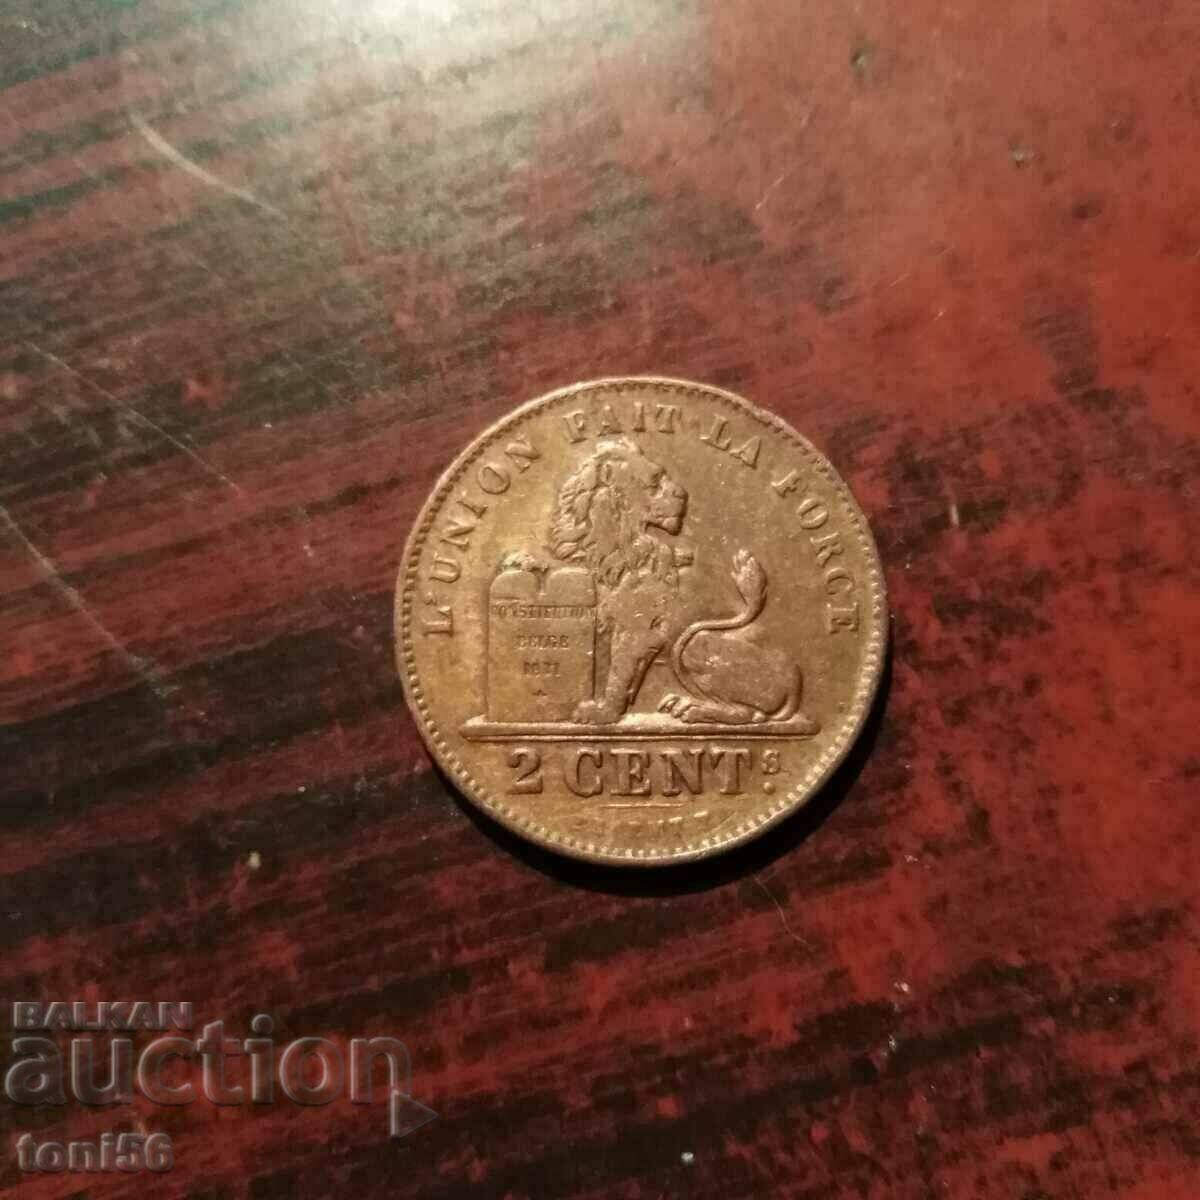 Belgium 2 cents 1902